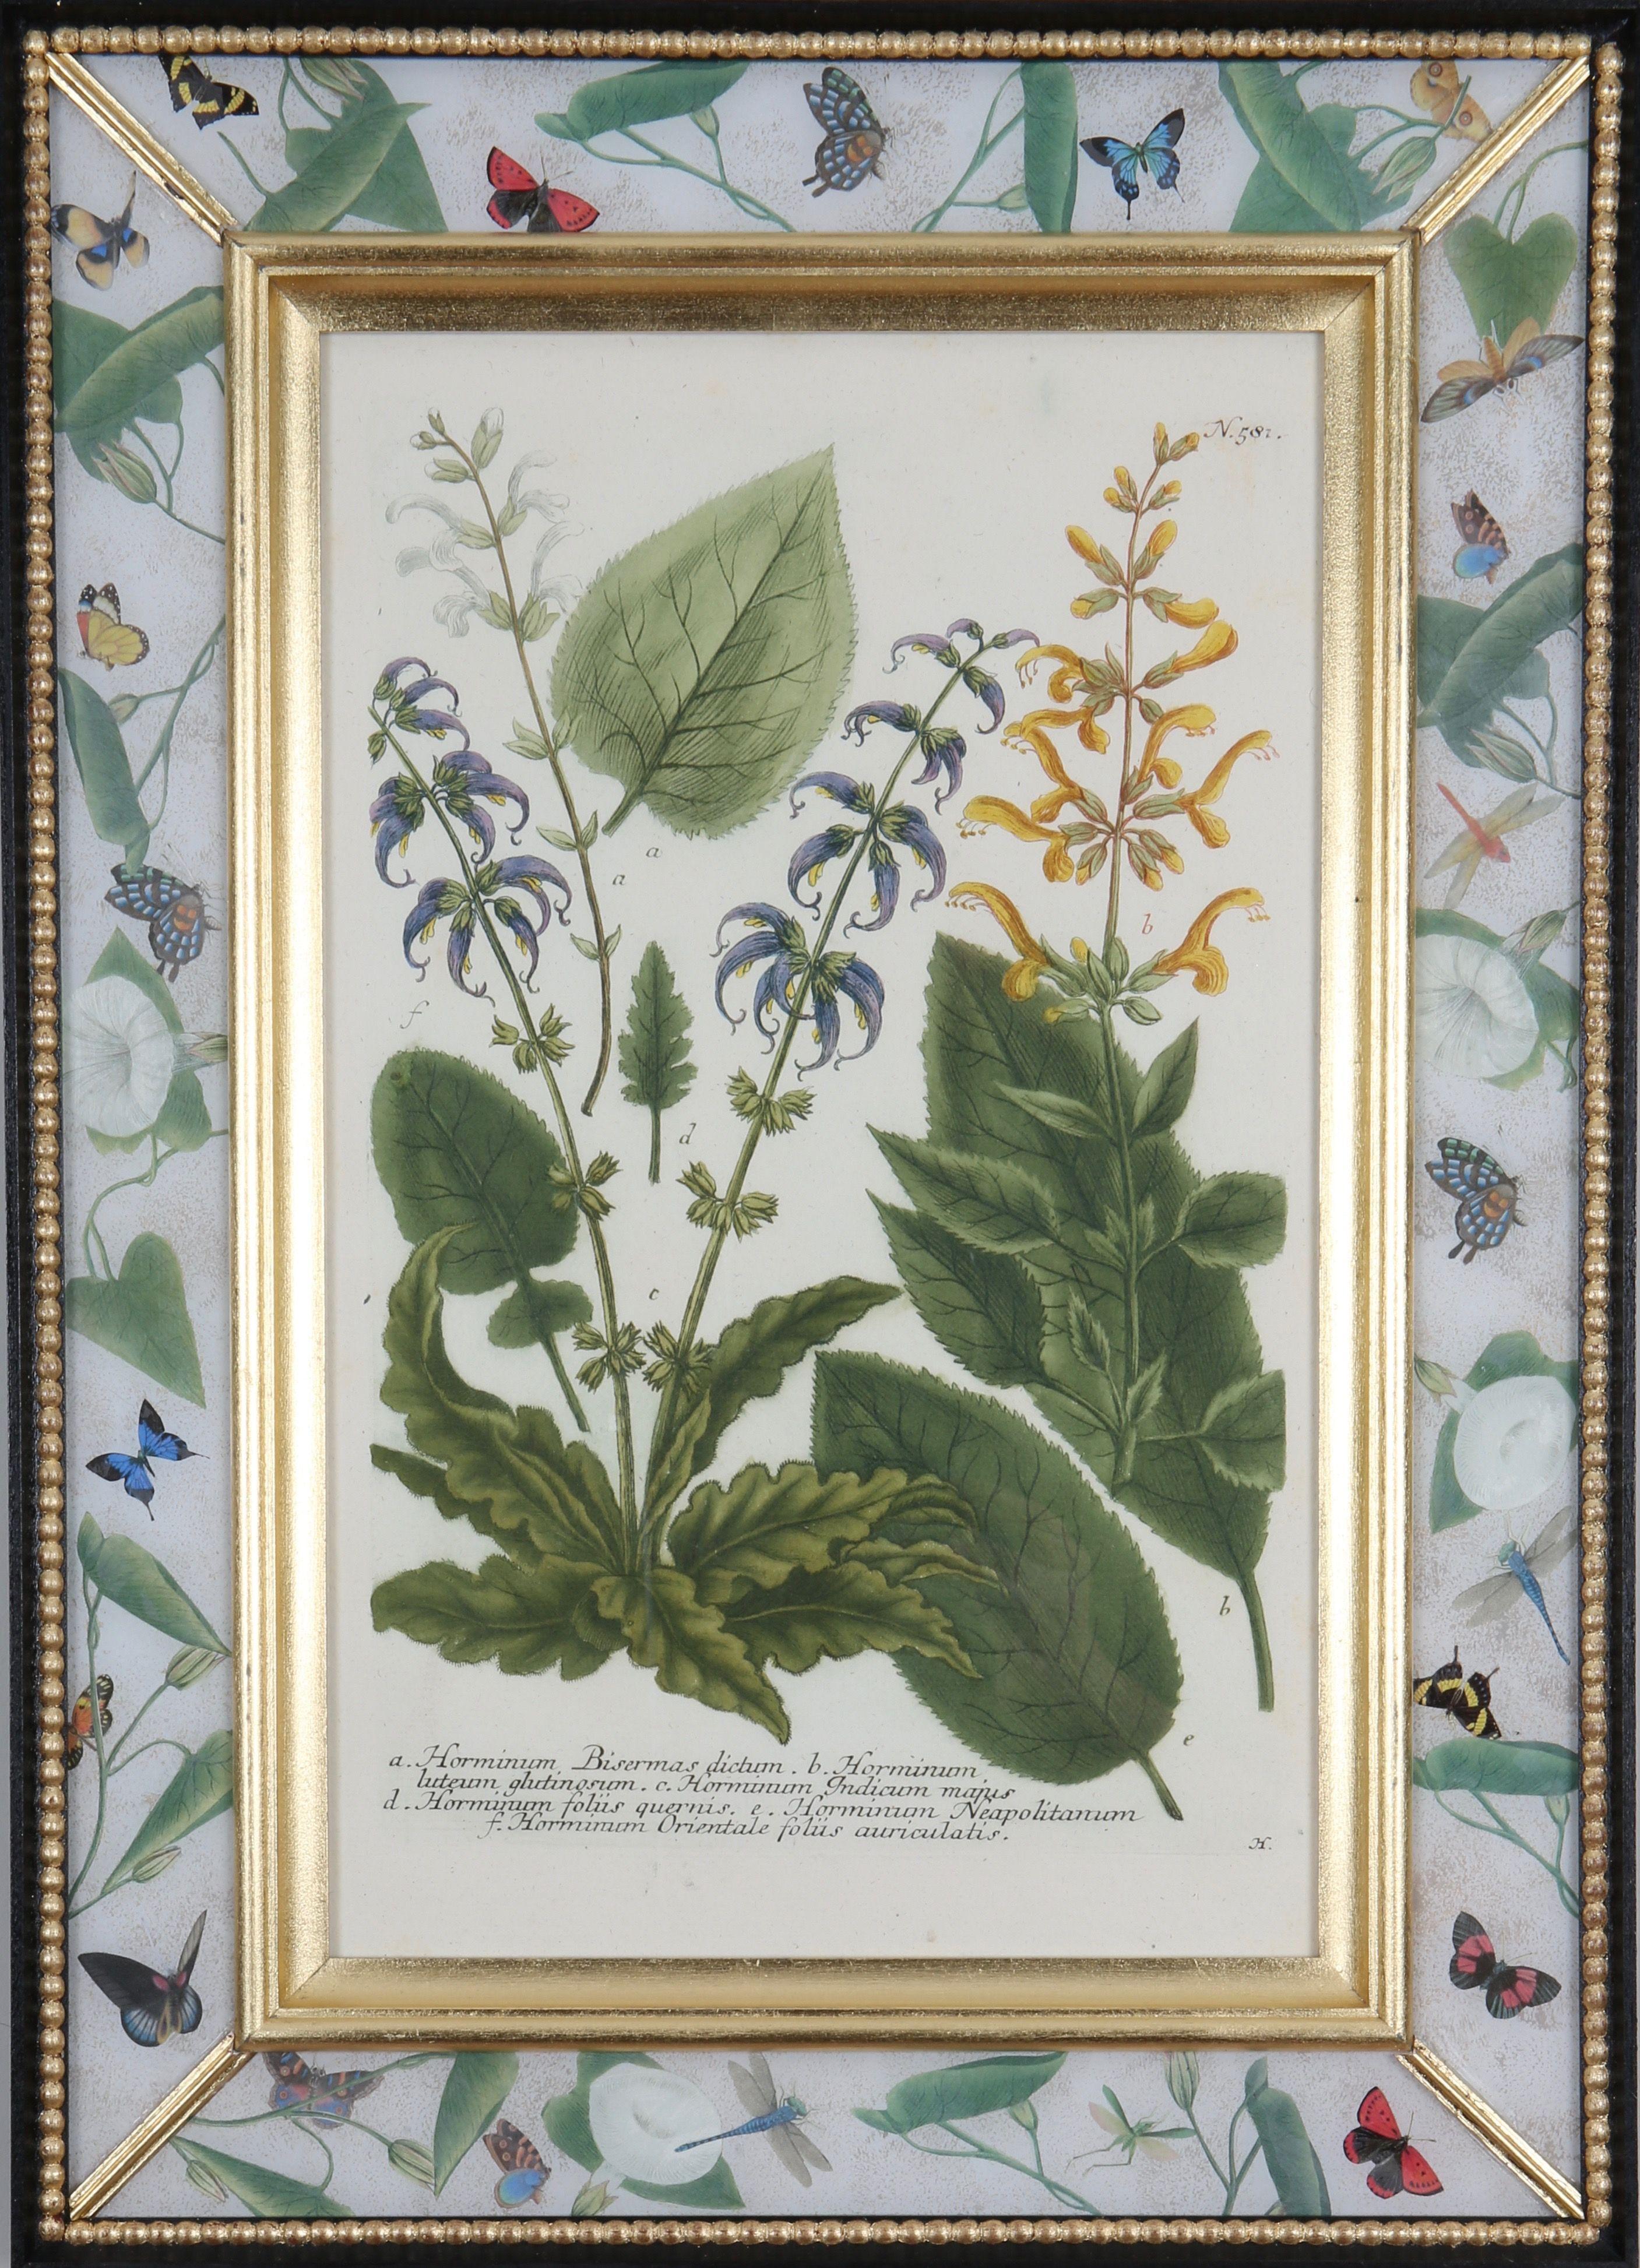 Une merveilleuse sélection de  gravures mezzotintes coloriées à la main tirées de : "Phytanthoza Iconographia",  c1739, présentés dans des cadres artisanaux en or jaune, ébène et décalcomanie. 

Johann Weinmann (1683-1741), pharmacien et apothicaire